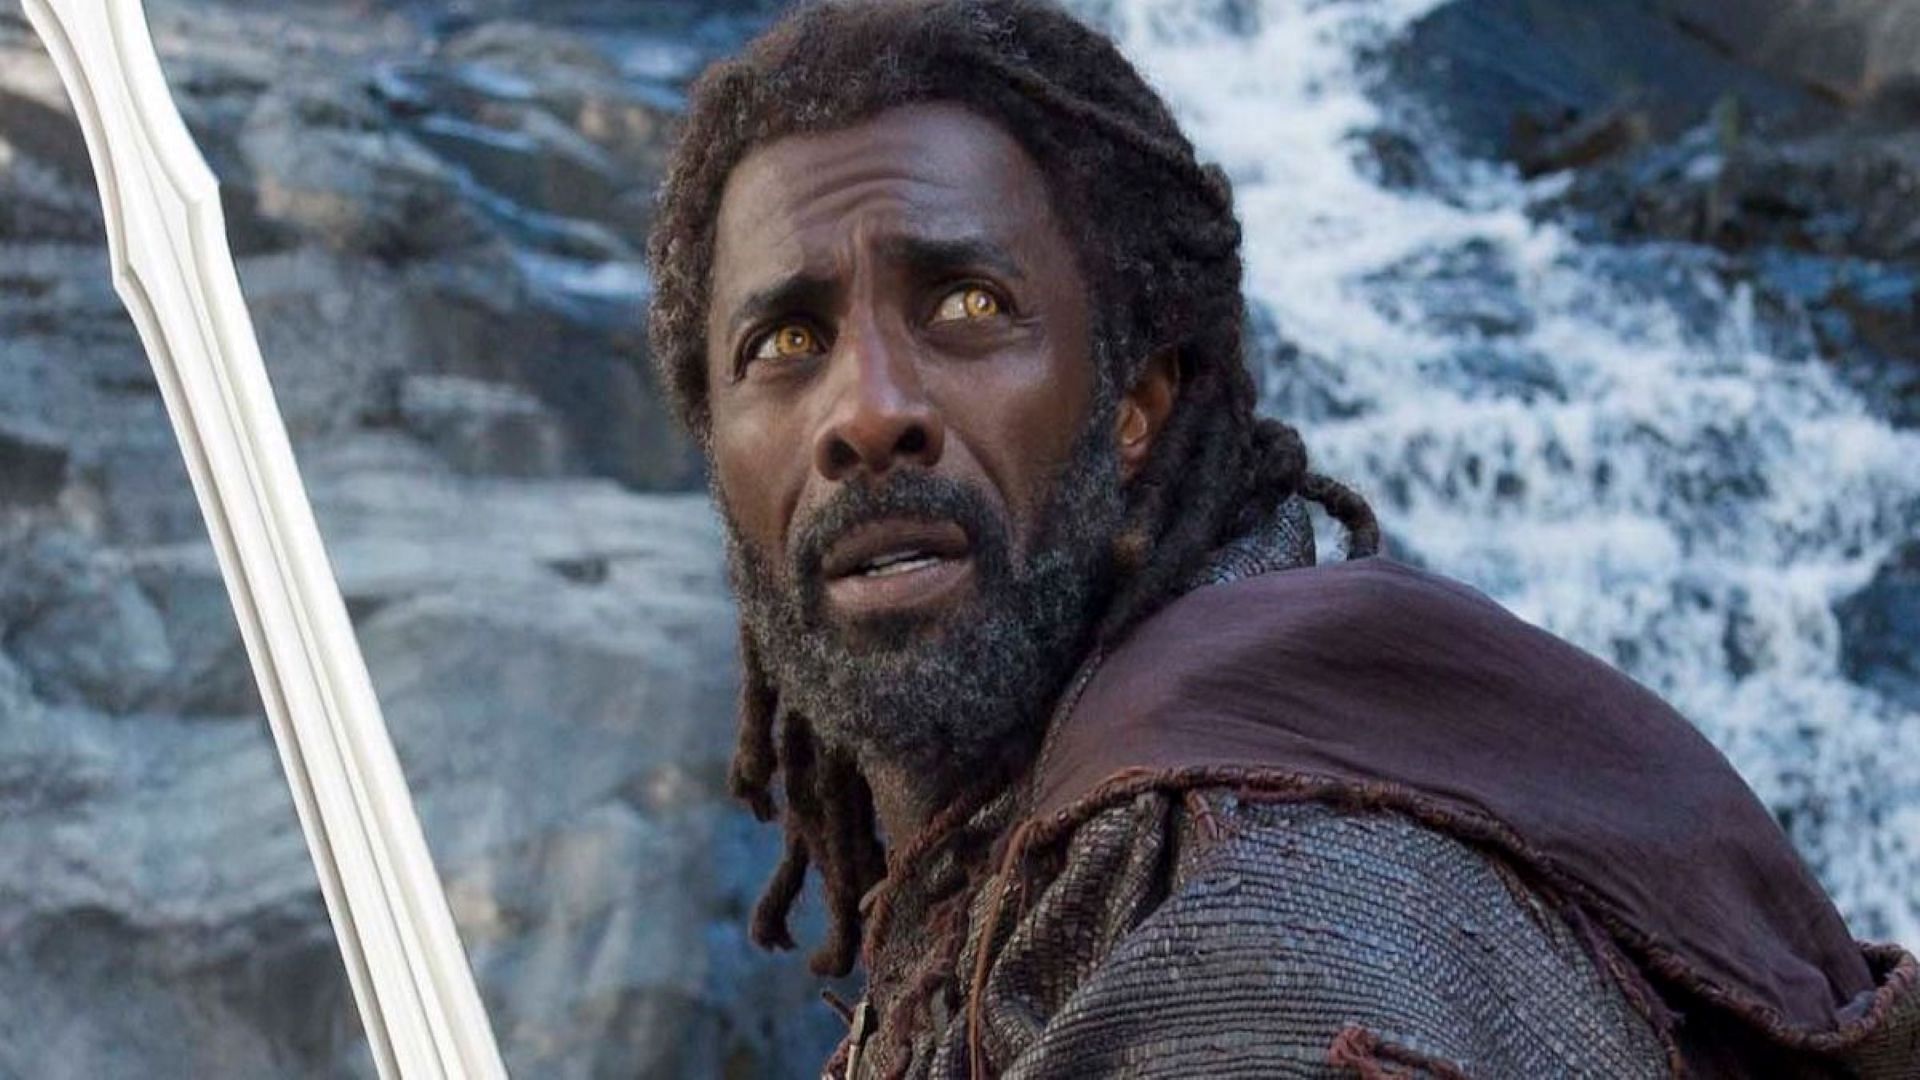 Idris Elba as Heimdall in Thor (Image via Marvel)